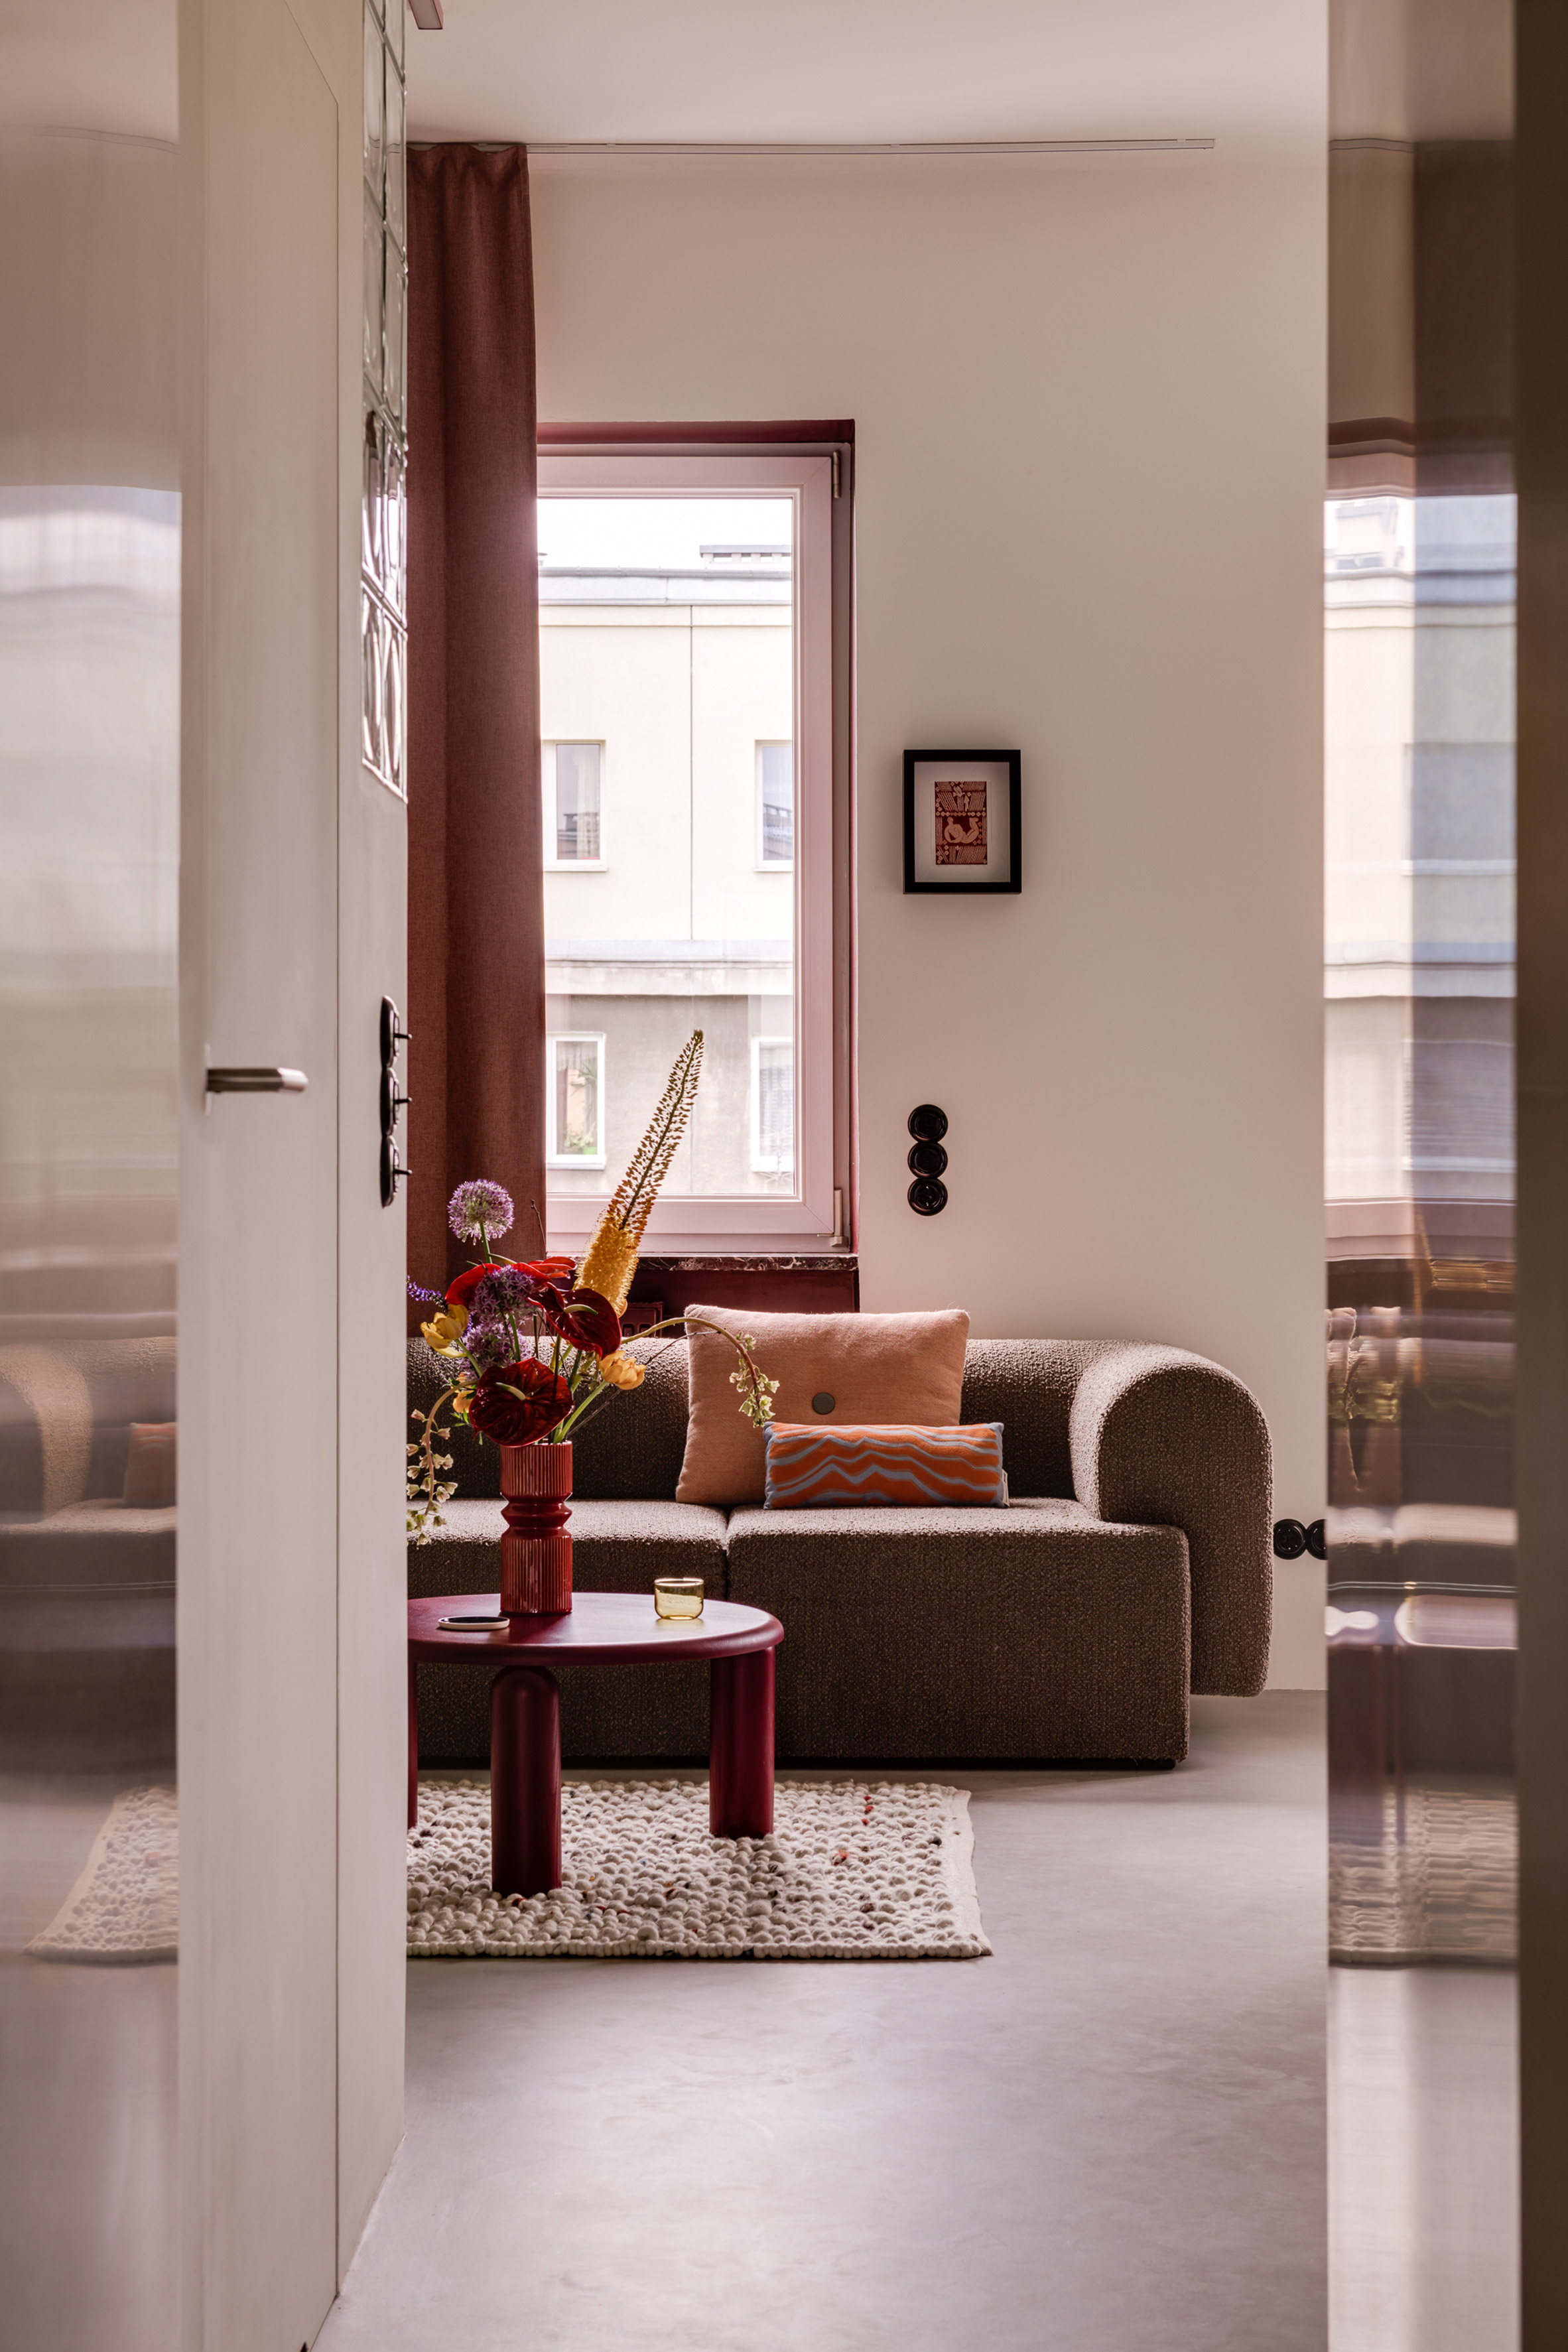 折衷的华沙公寓内部设计成“精致的拼图”|ART-Arrakis | 建筑室内设计的创新与灵感